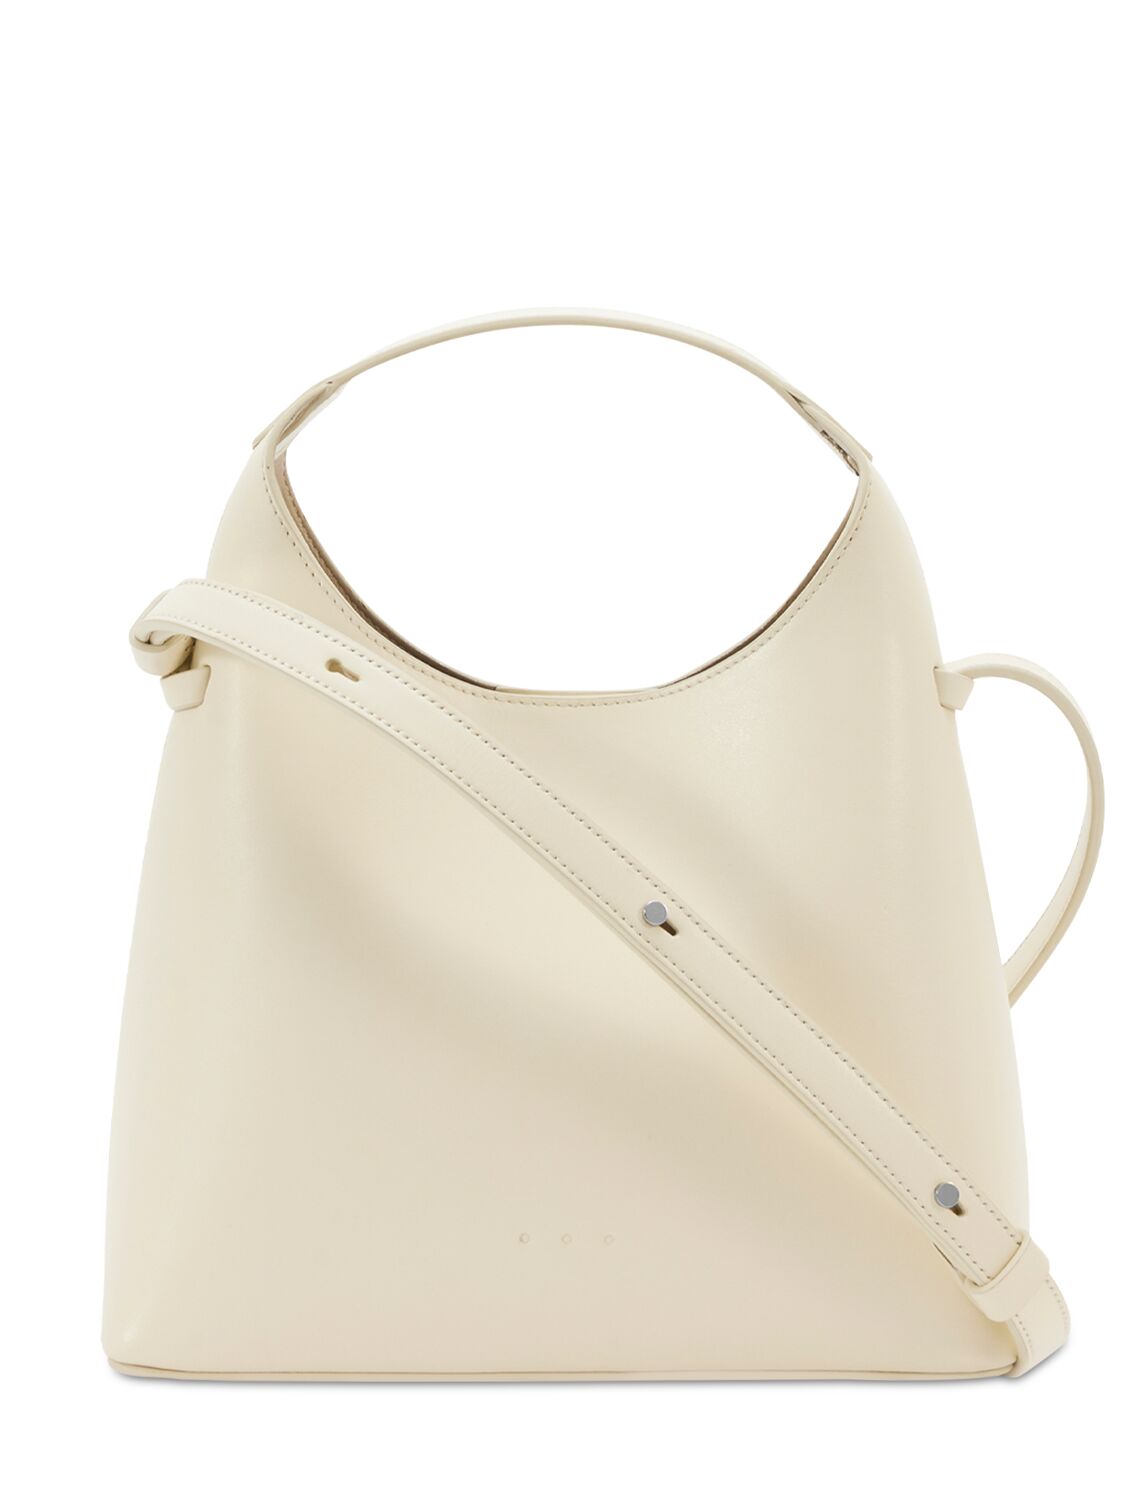 Image of Mini Sac Smooth Leather Top Handle Bag